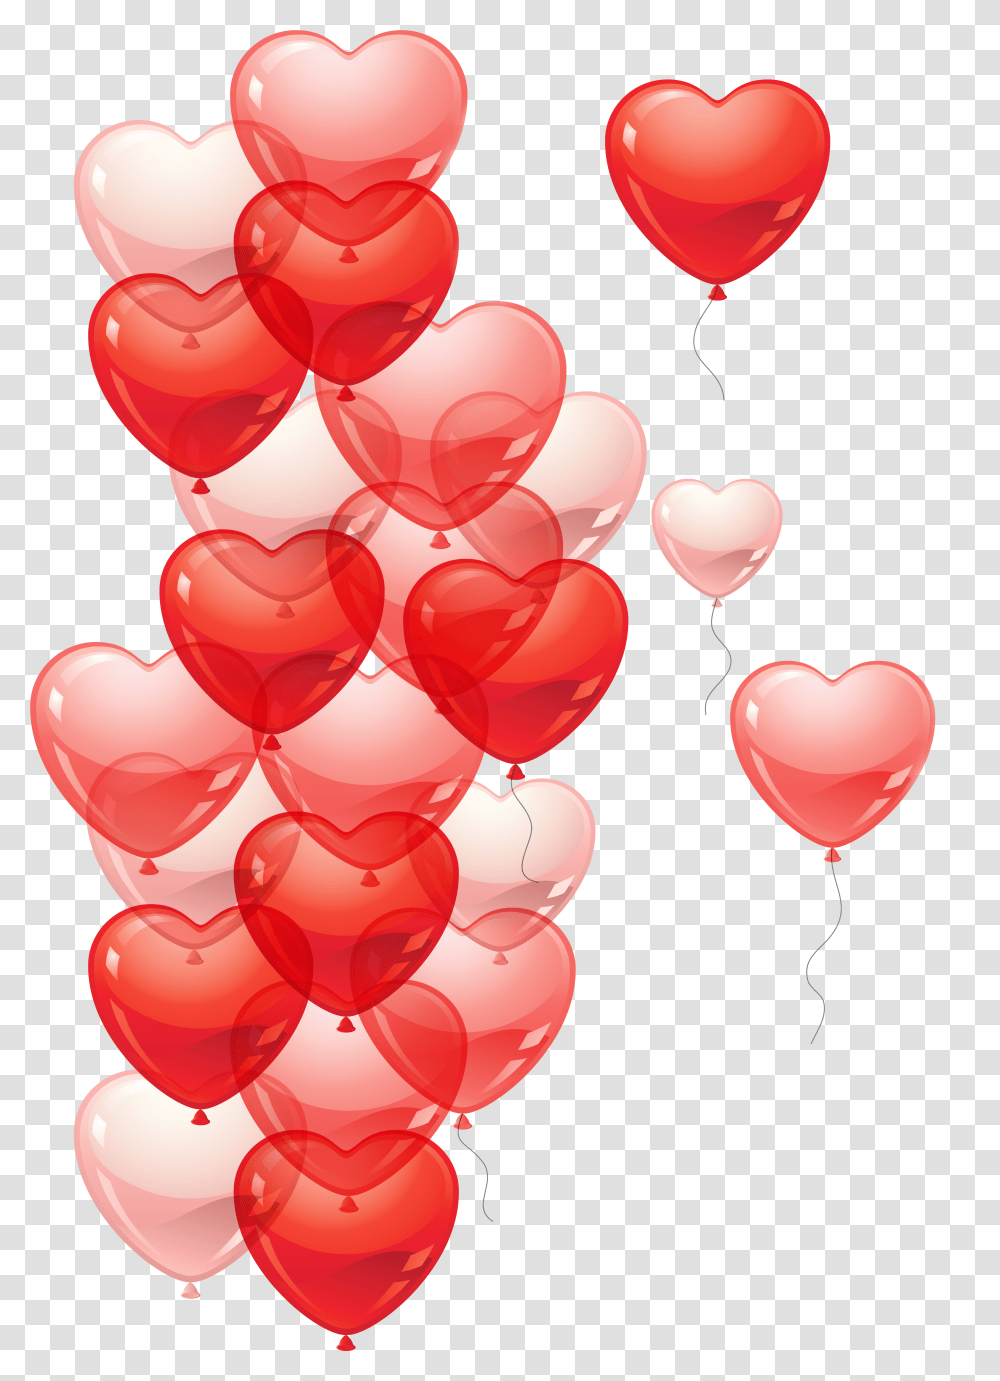 Freeuse Stock Heart Bubbles Clipart You're A Dream Come True Meme, Plant, Balloon, Petal, Flower Transparent Png